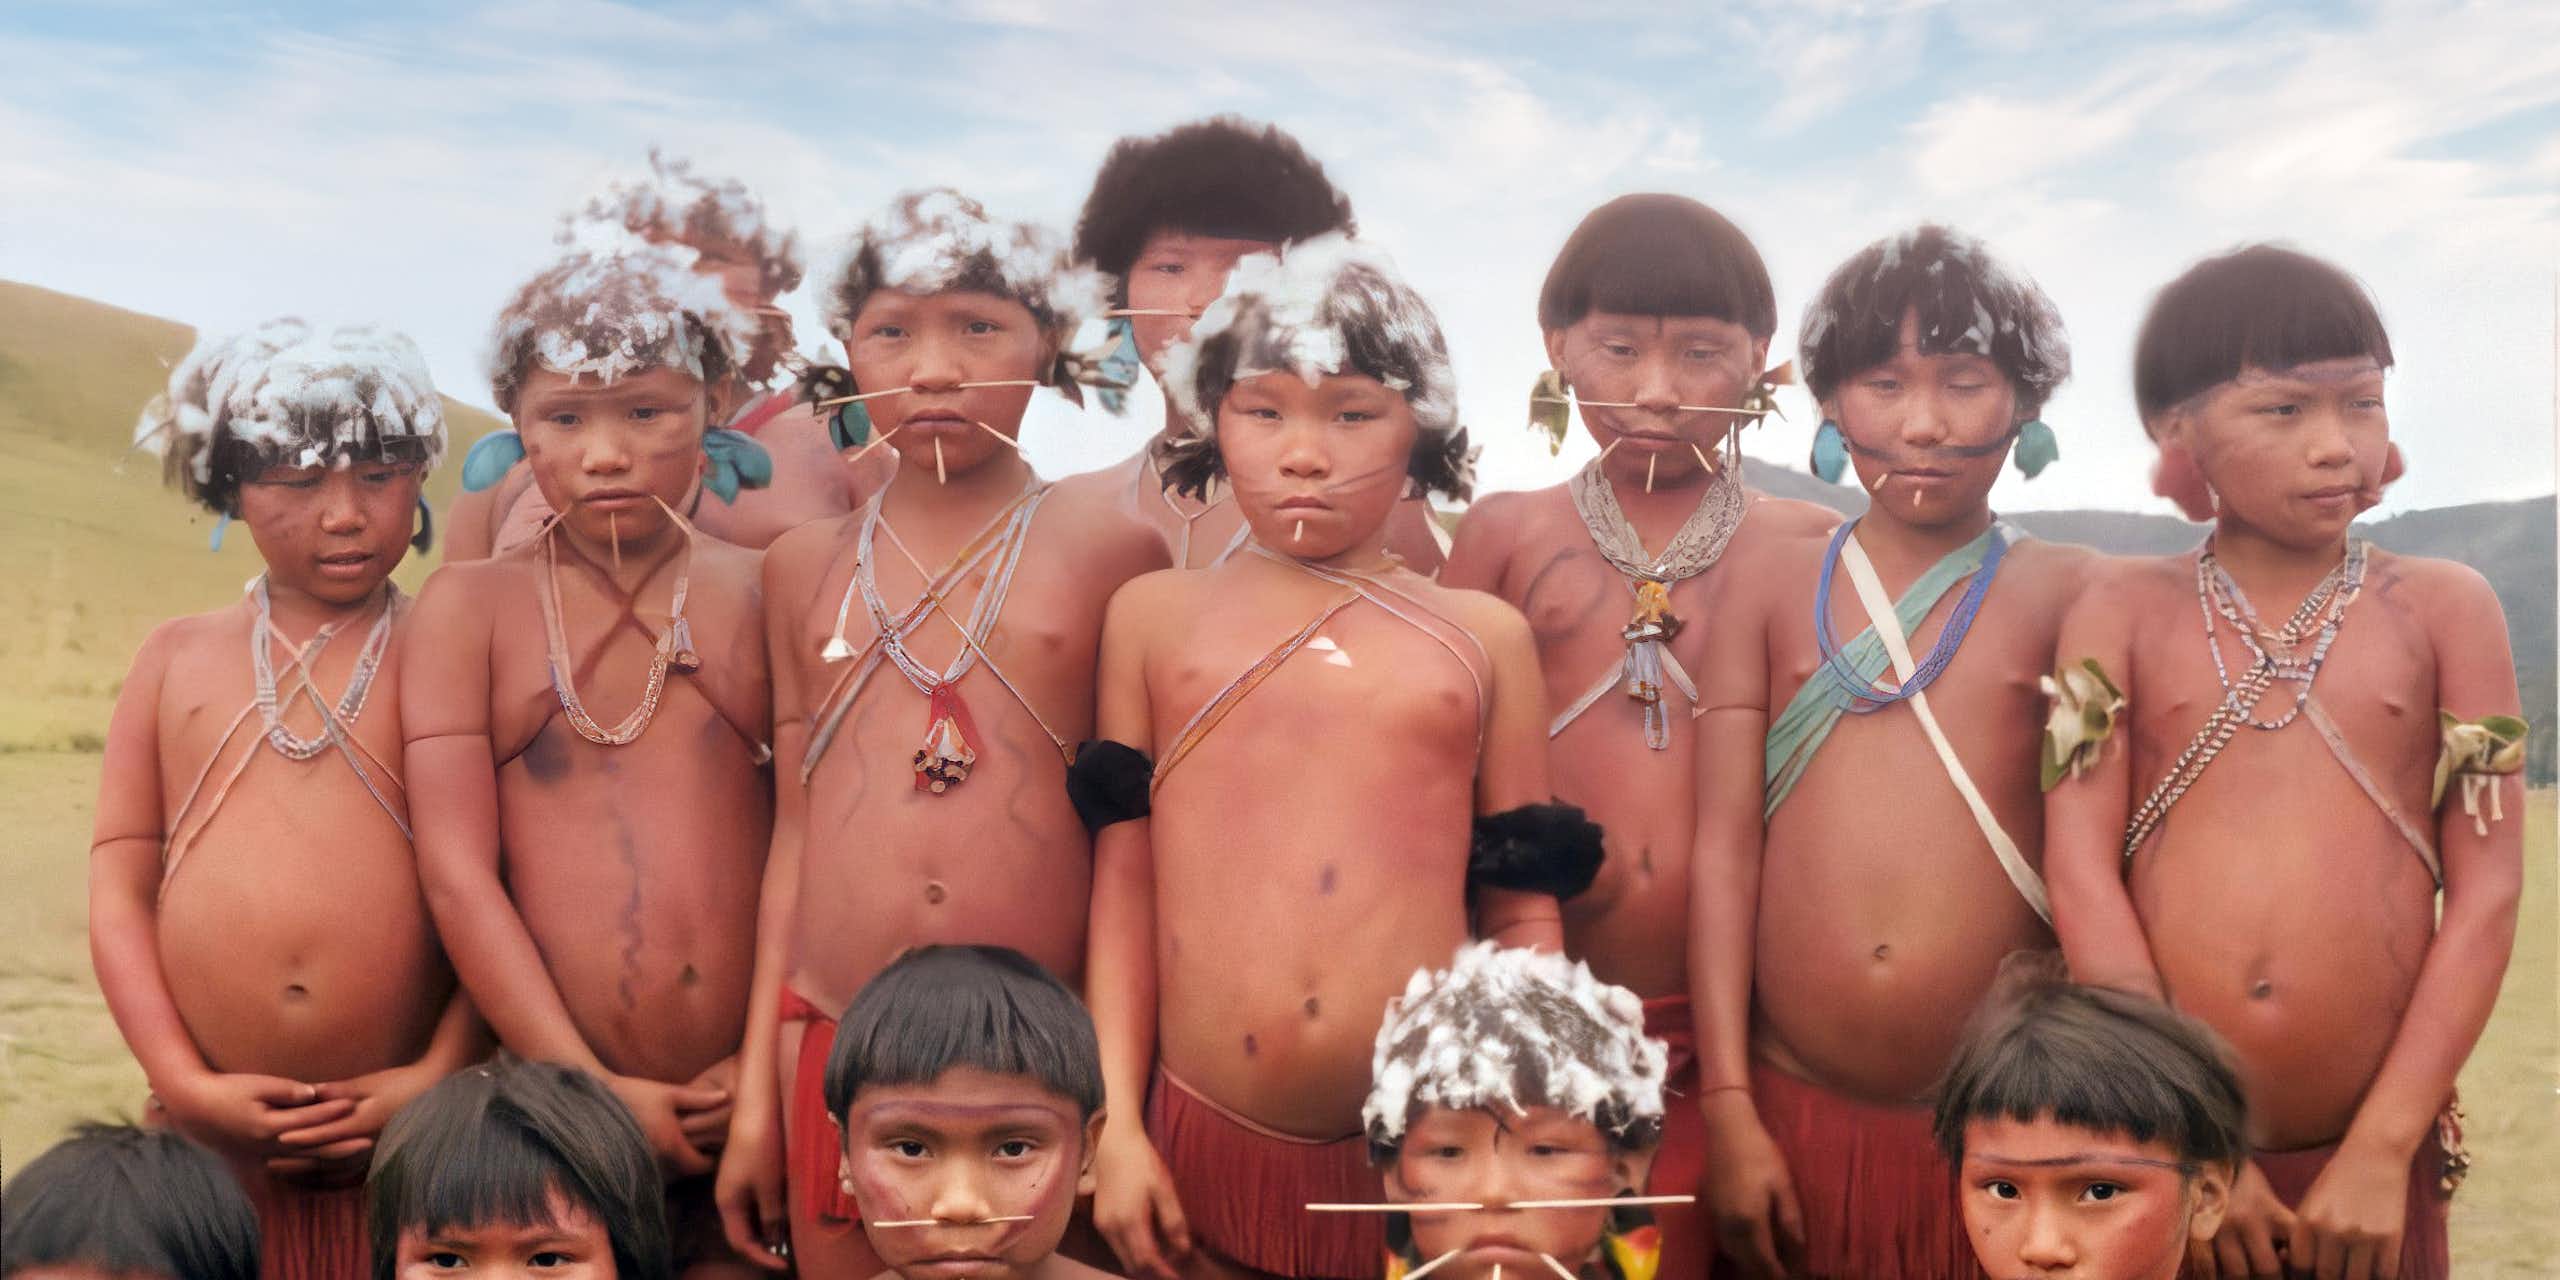 Los pueblos indígenas no son naturaleza silvestre: cuando las áreas protegidas ignoran sus derechos